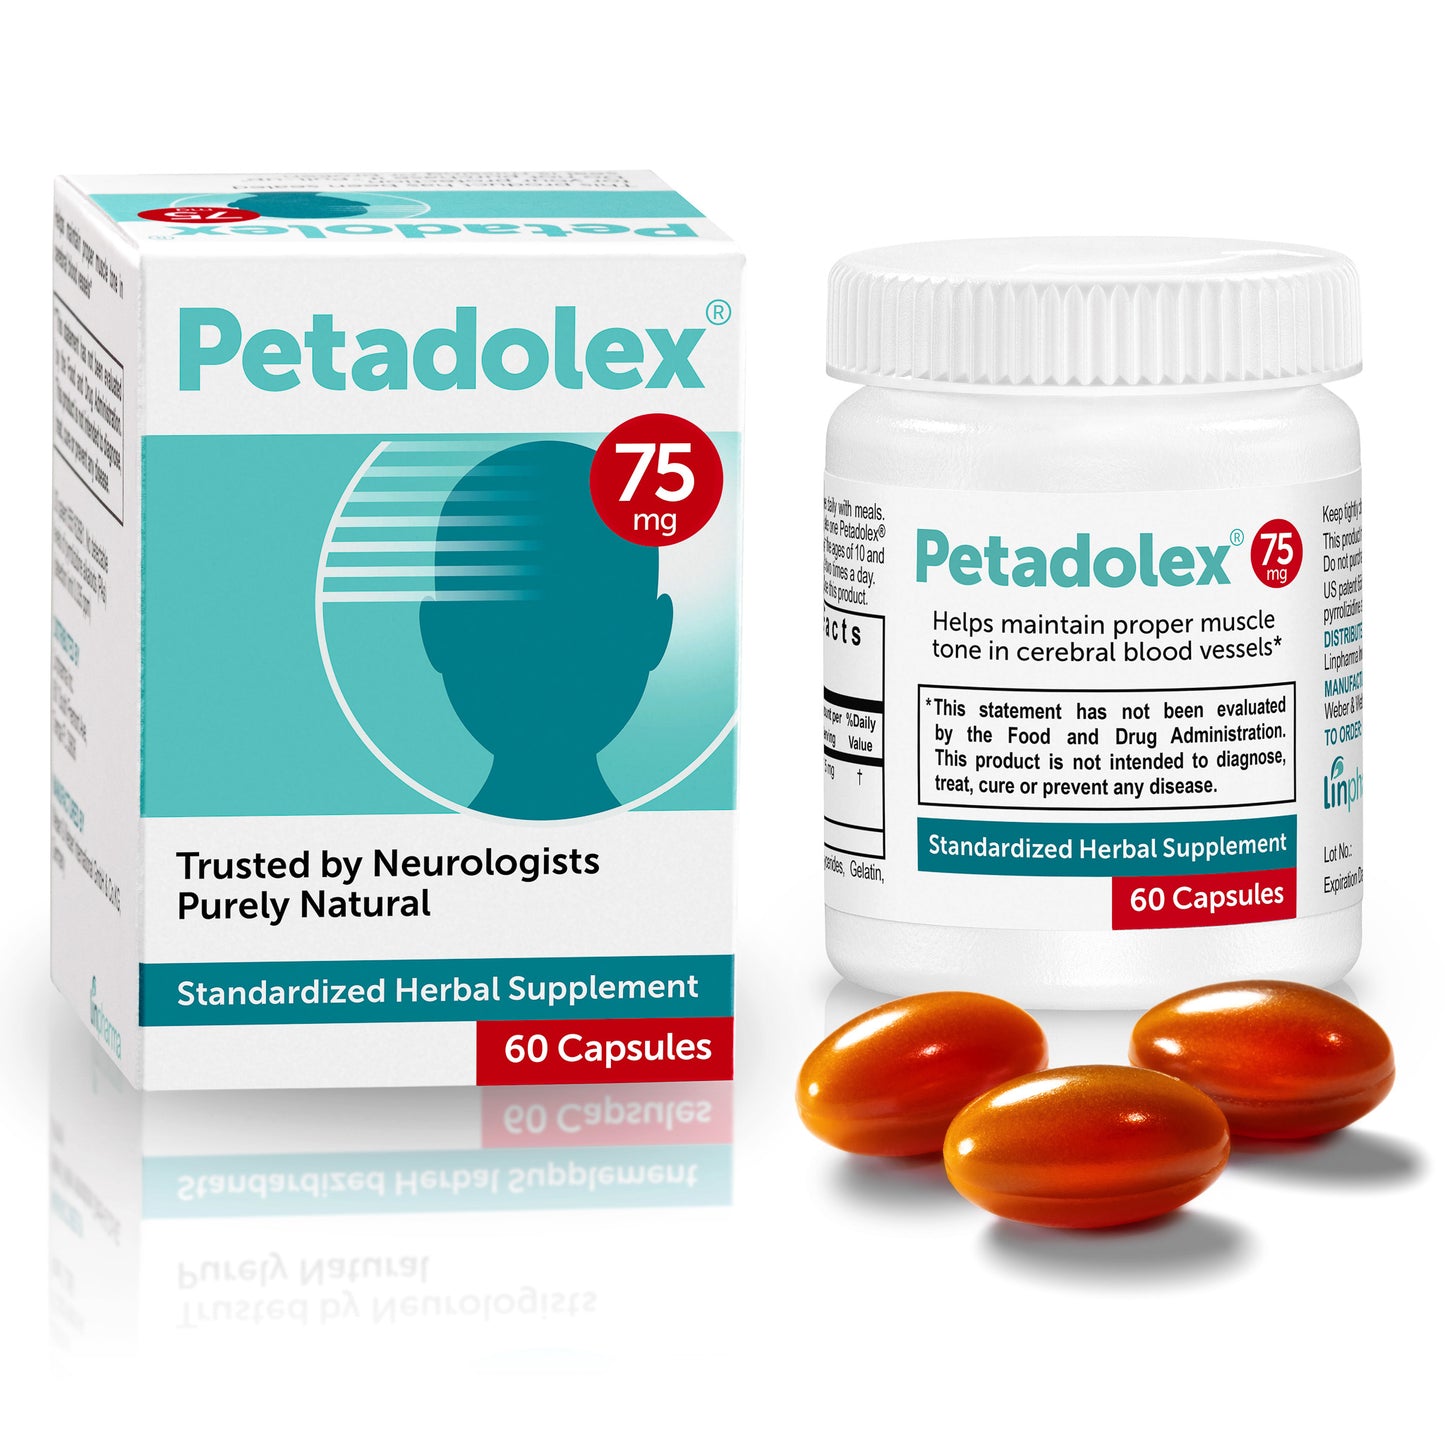 Petadolex 75 mg